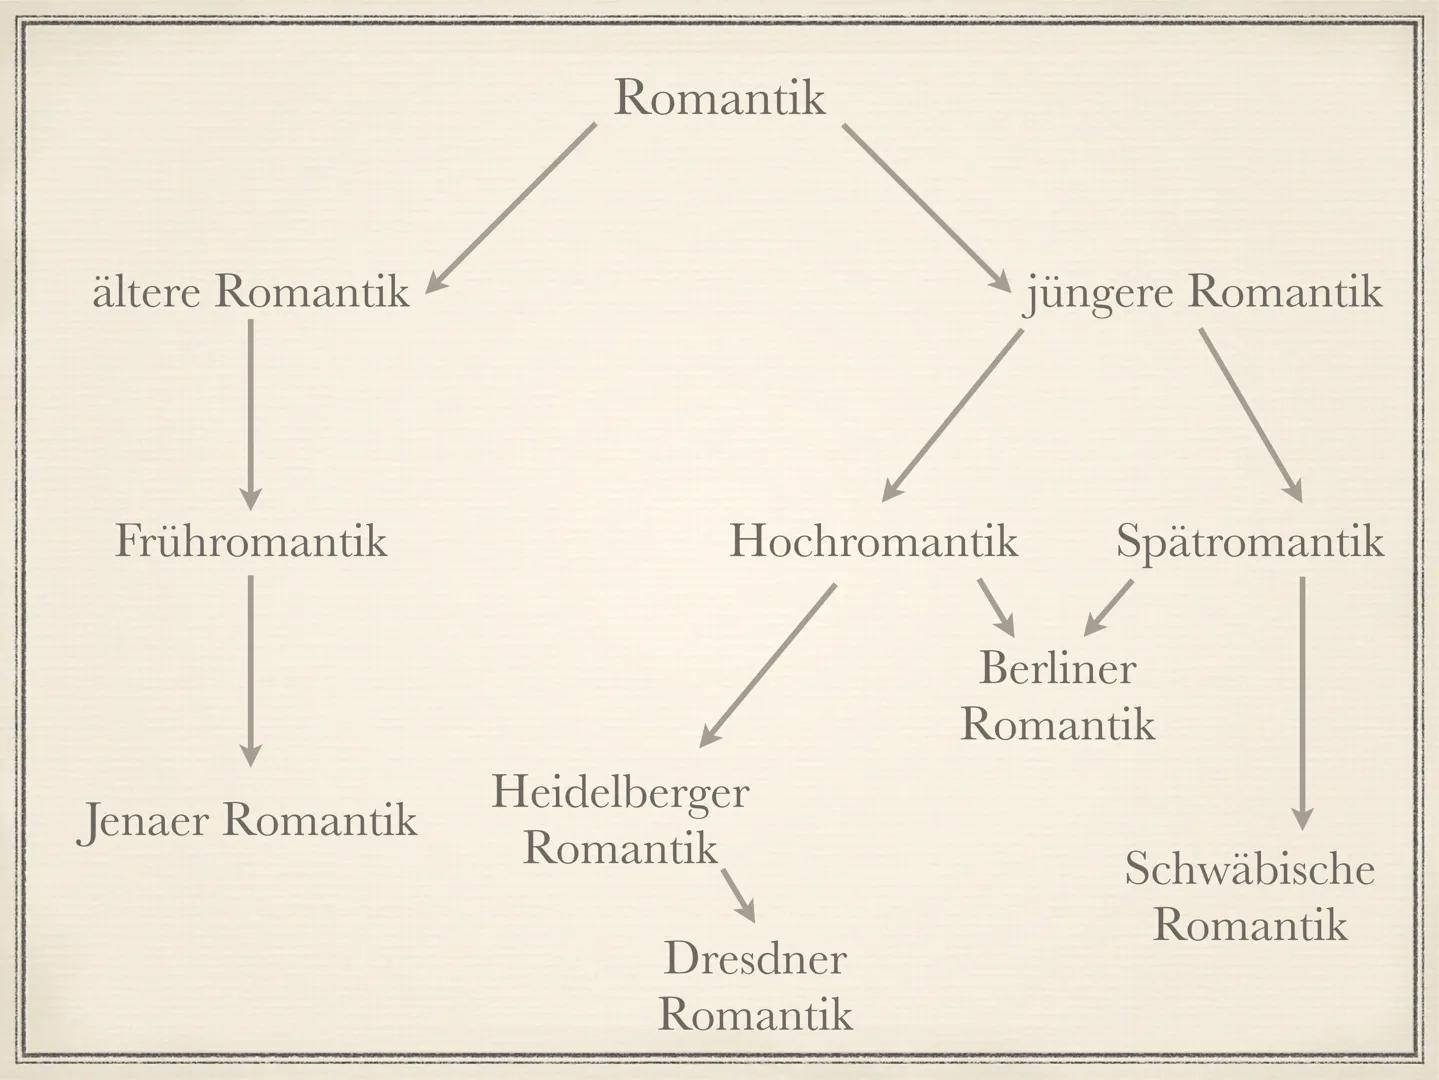 Die Romantik
1795 bis 1835 Die Welt muß romantisiert werden. So findet man den
ursprünglichen Sinn wieder. Indem ich dem Gemeinen einen
hohe